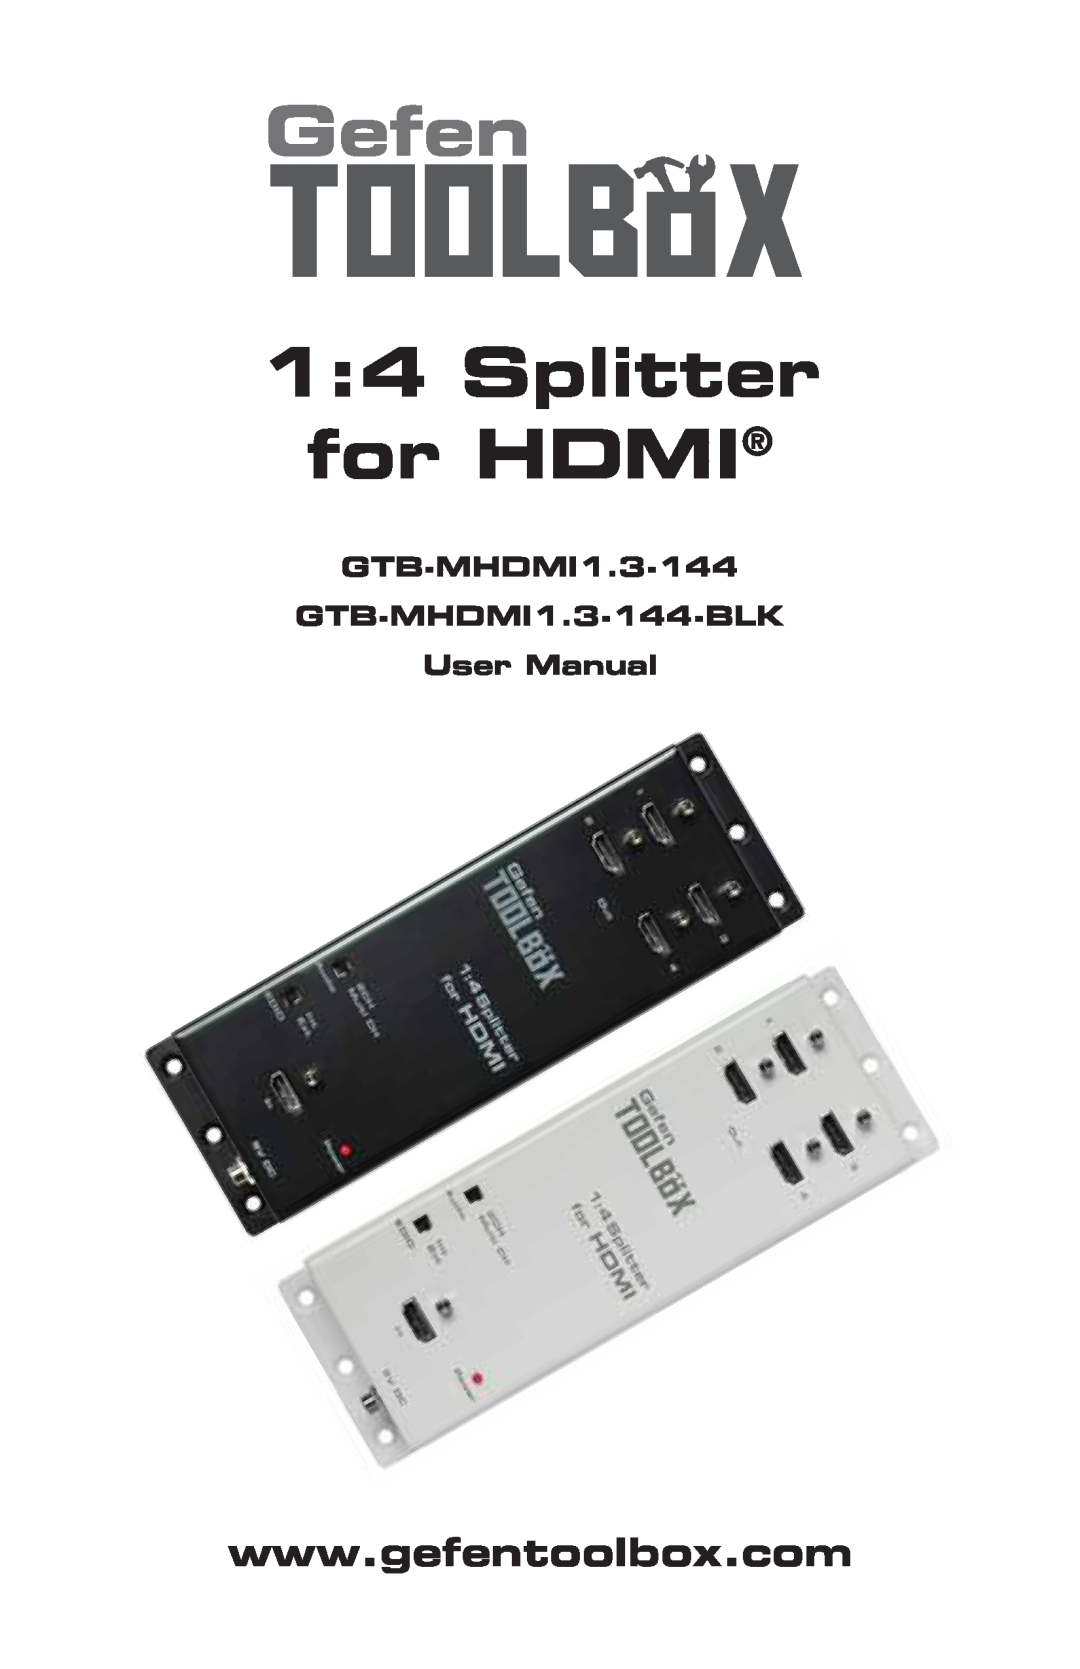 Gefen GTB-MHDMI1.3-144-BLK user manual Gefen, Splitter for HDMI 